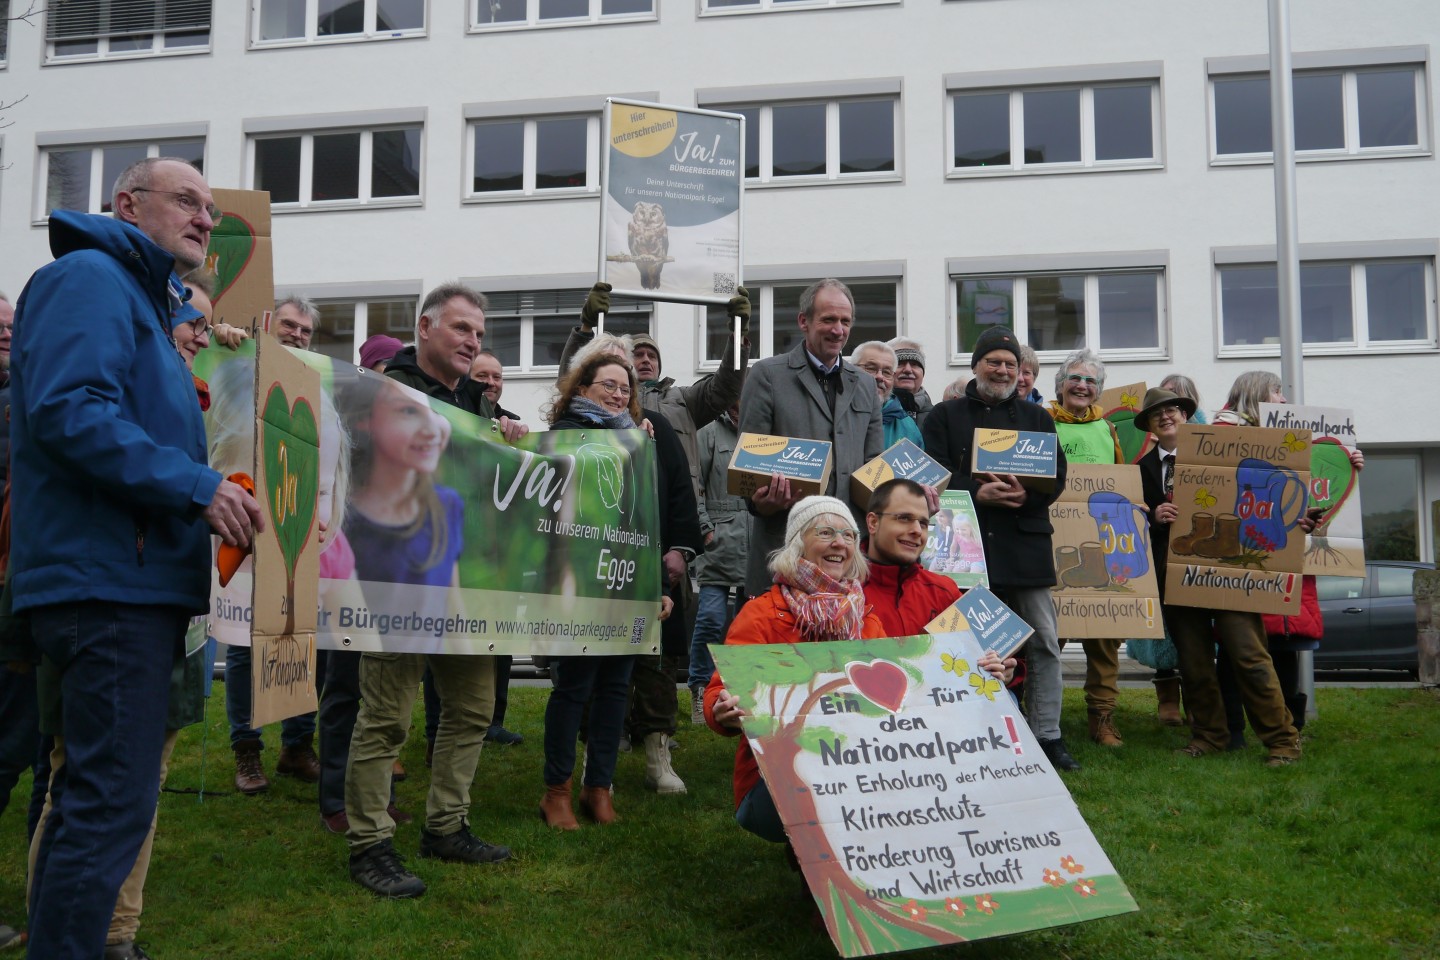 Große Zustimmung für Nationalpark-Bürgerbegehren - Bündnis übergibt Unterschriften an Kreis Höxter